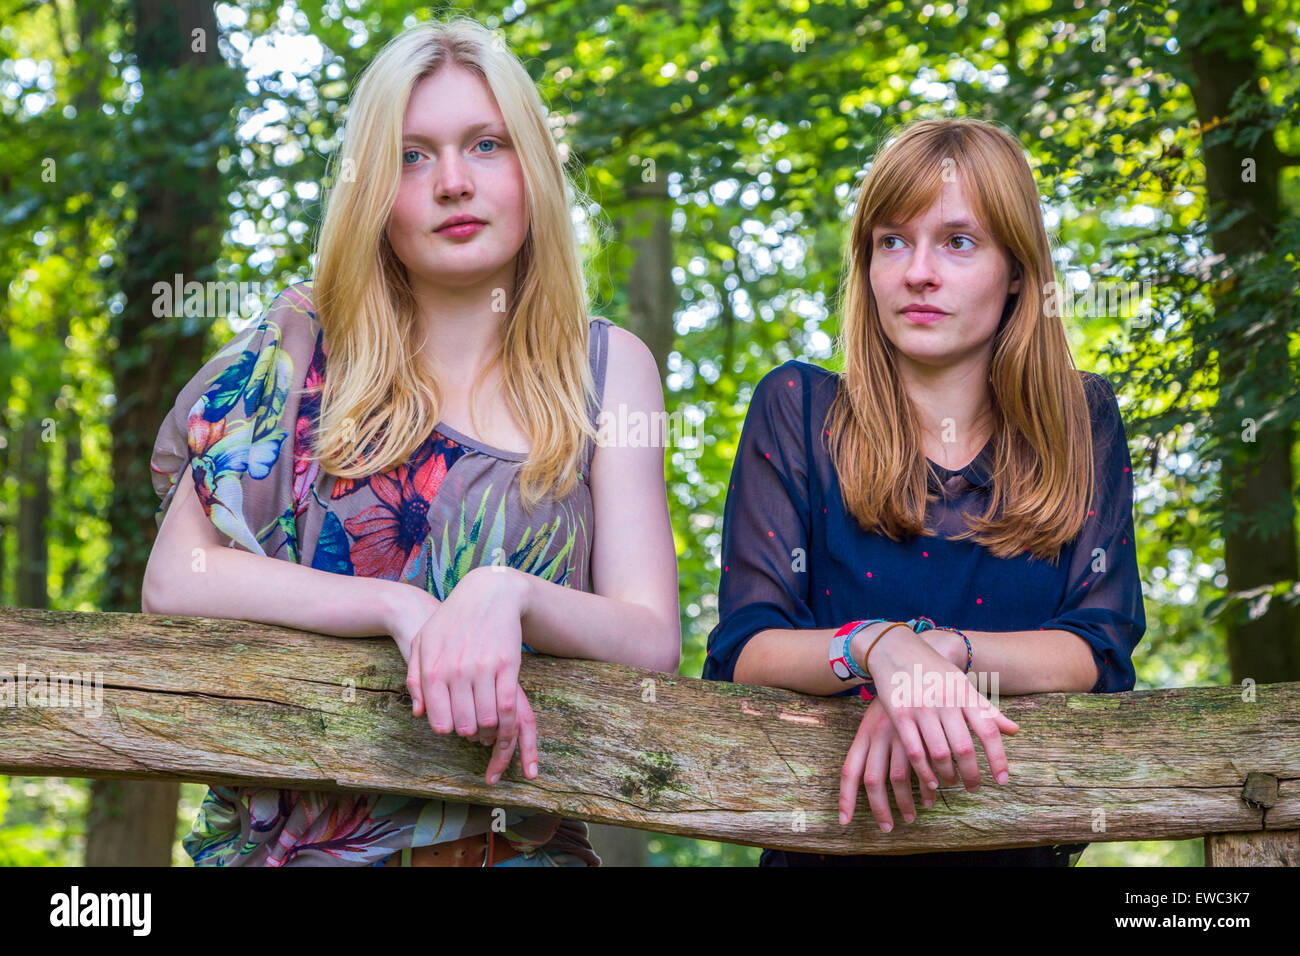 Zwei europäische Mädchen im Teenageralter stützte sich auf hölzernen Zaun in der Natur Stockfoto